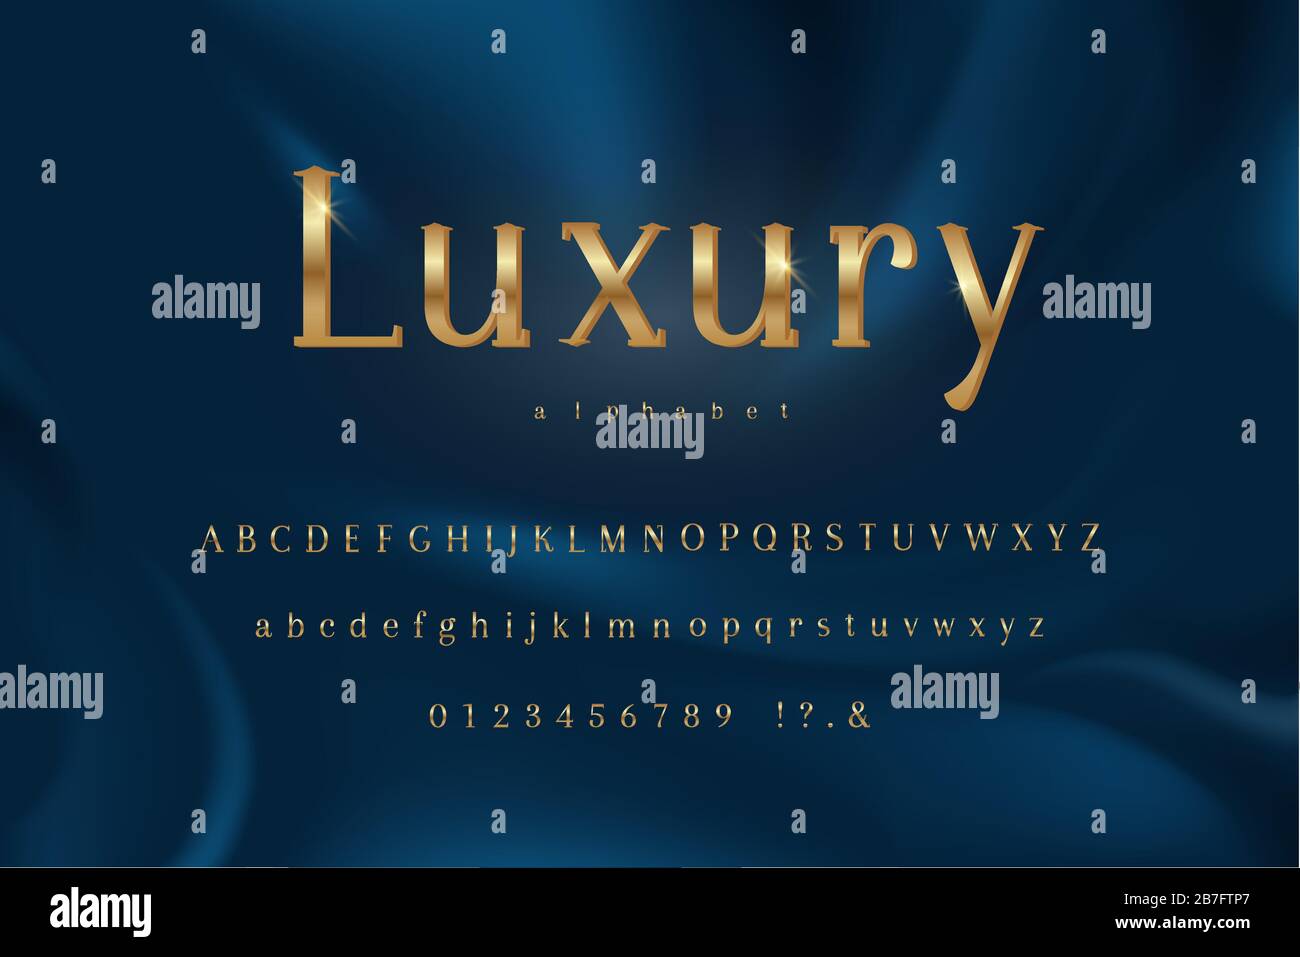 Police de luxe à thème doré avec majuscules minuscules et chiffres sur fond bleu foncé Illustration de Vecteur